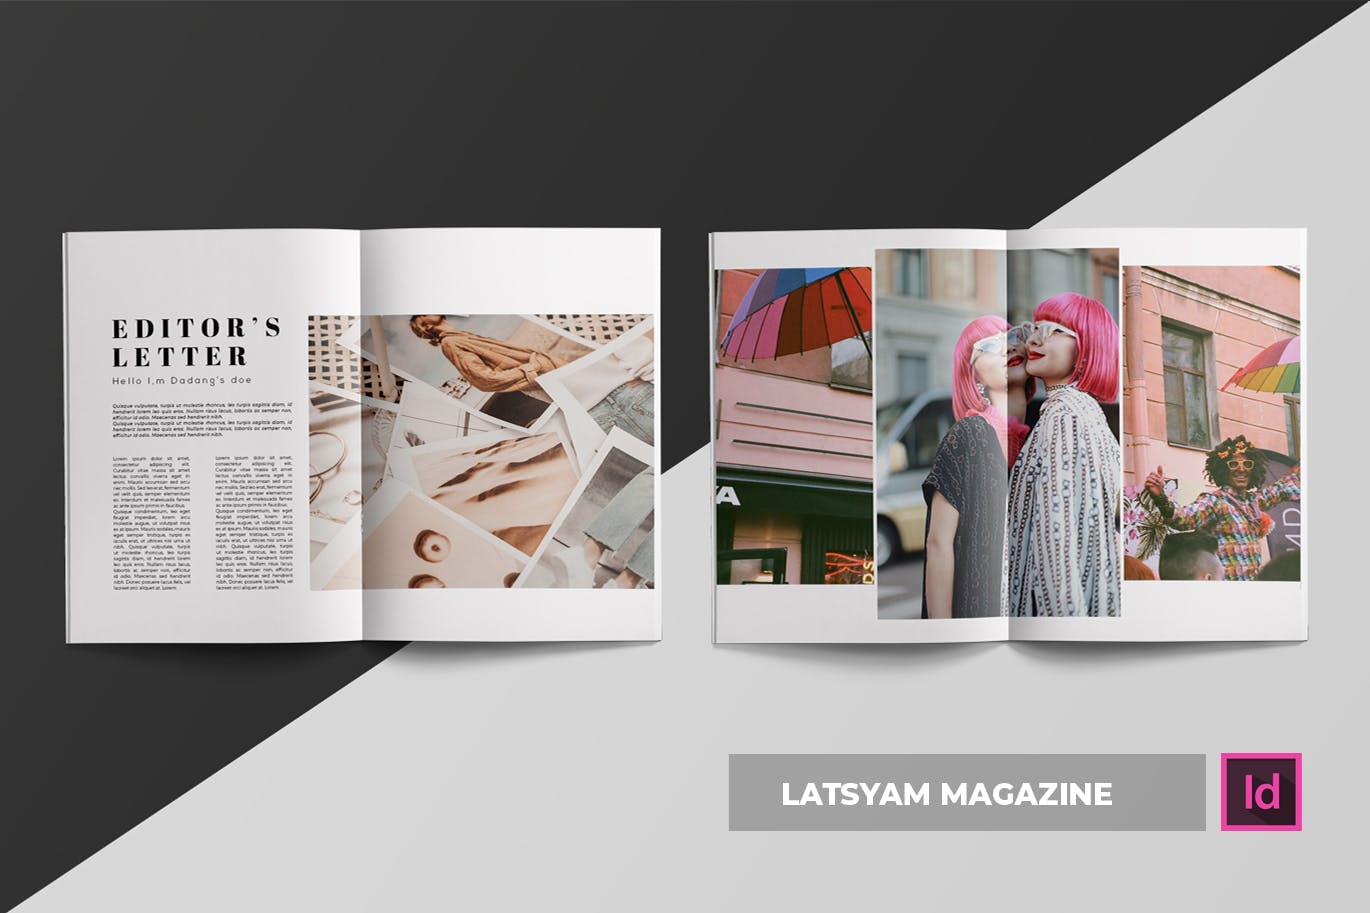 时尚主题第一素材精选杂志版式设计INDD模板 Latsyam | Magazine Template插图(2)